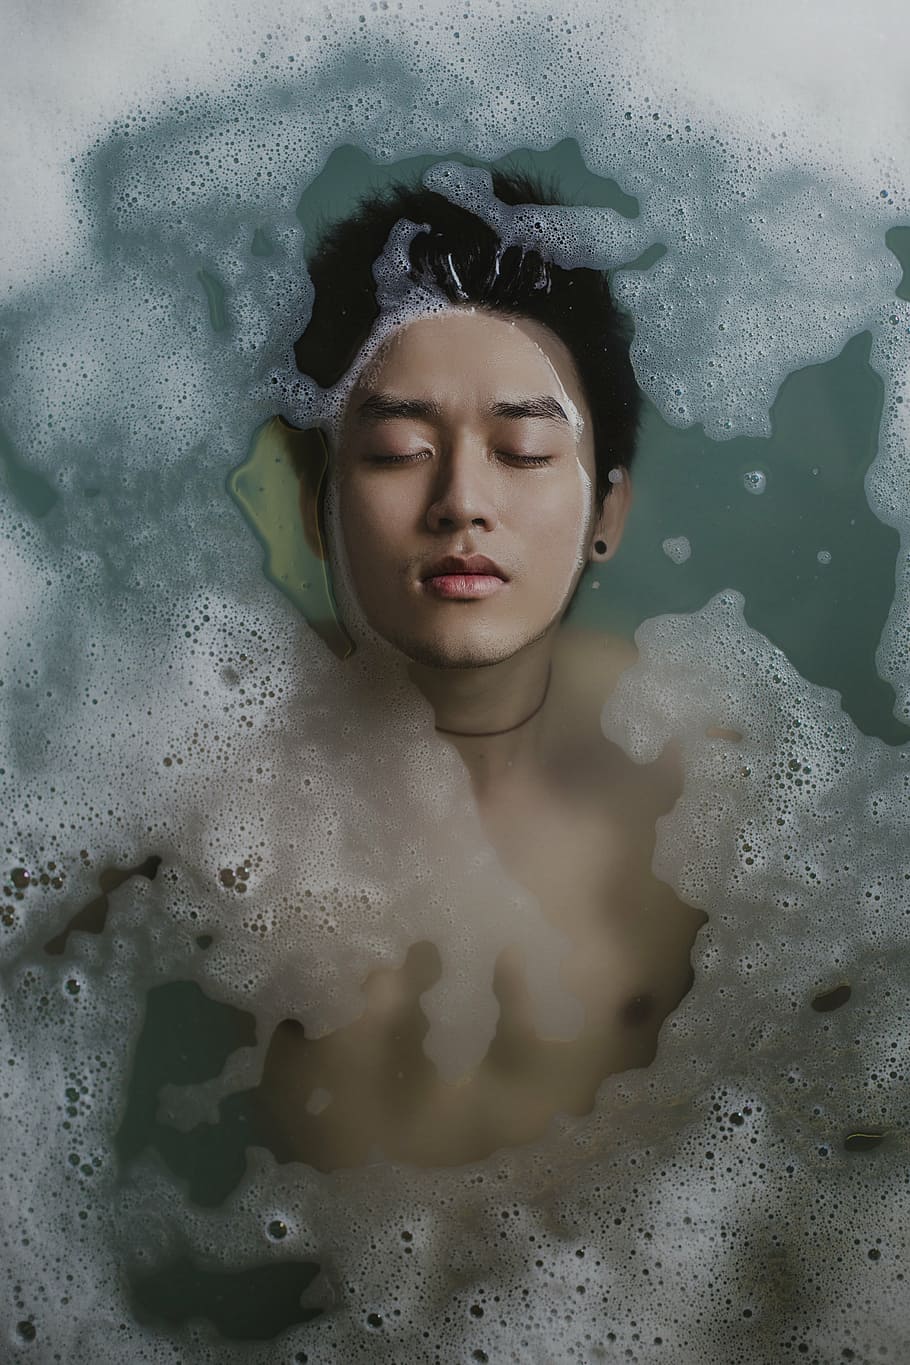 man face, bathing, person, water, foam, soap, man, boy, relaxing, bath